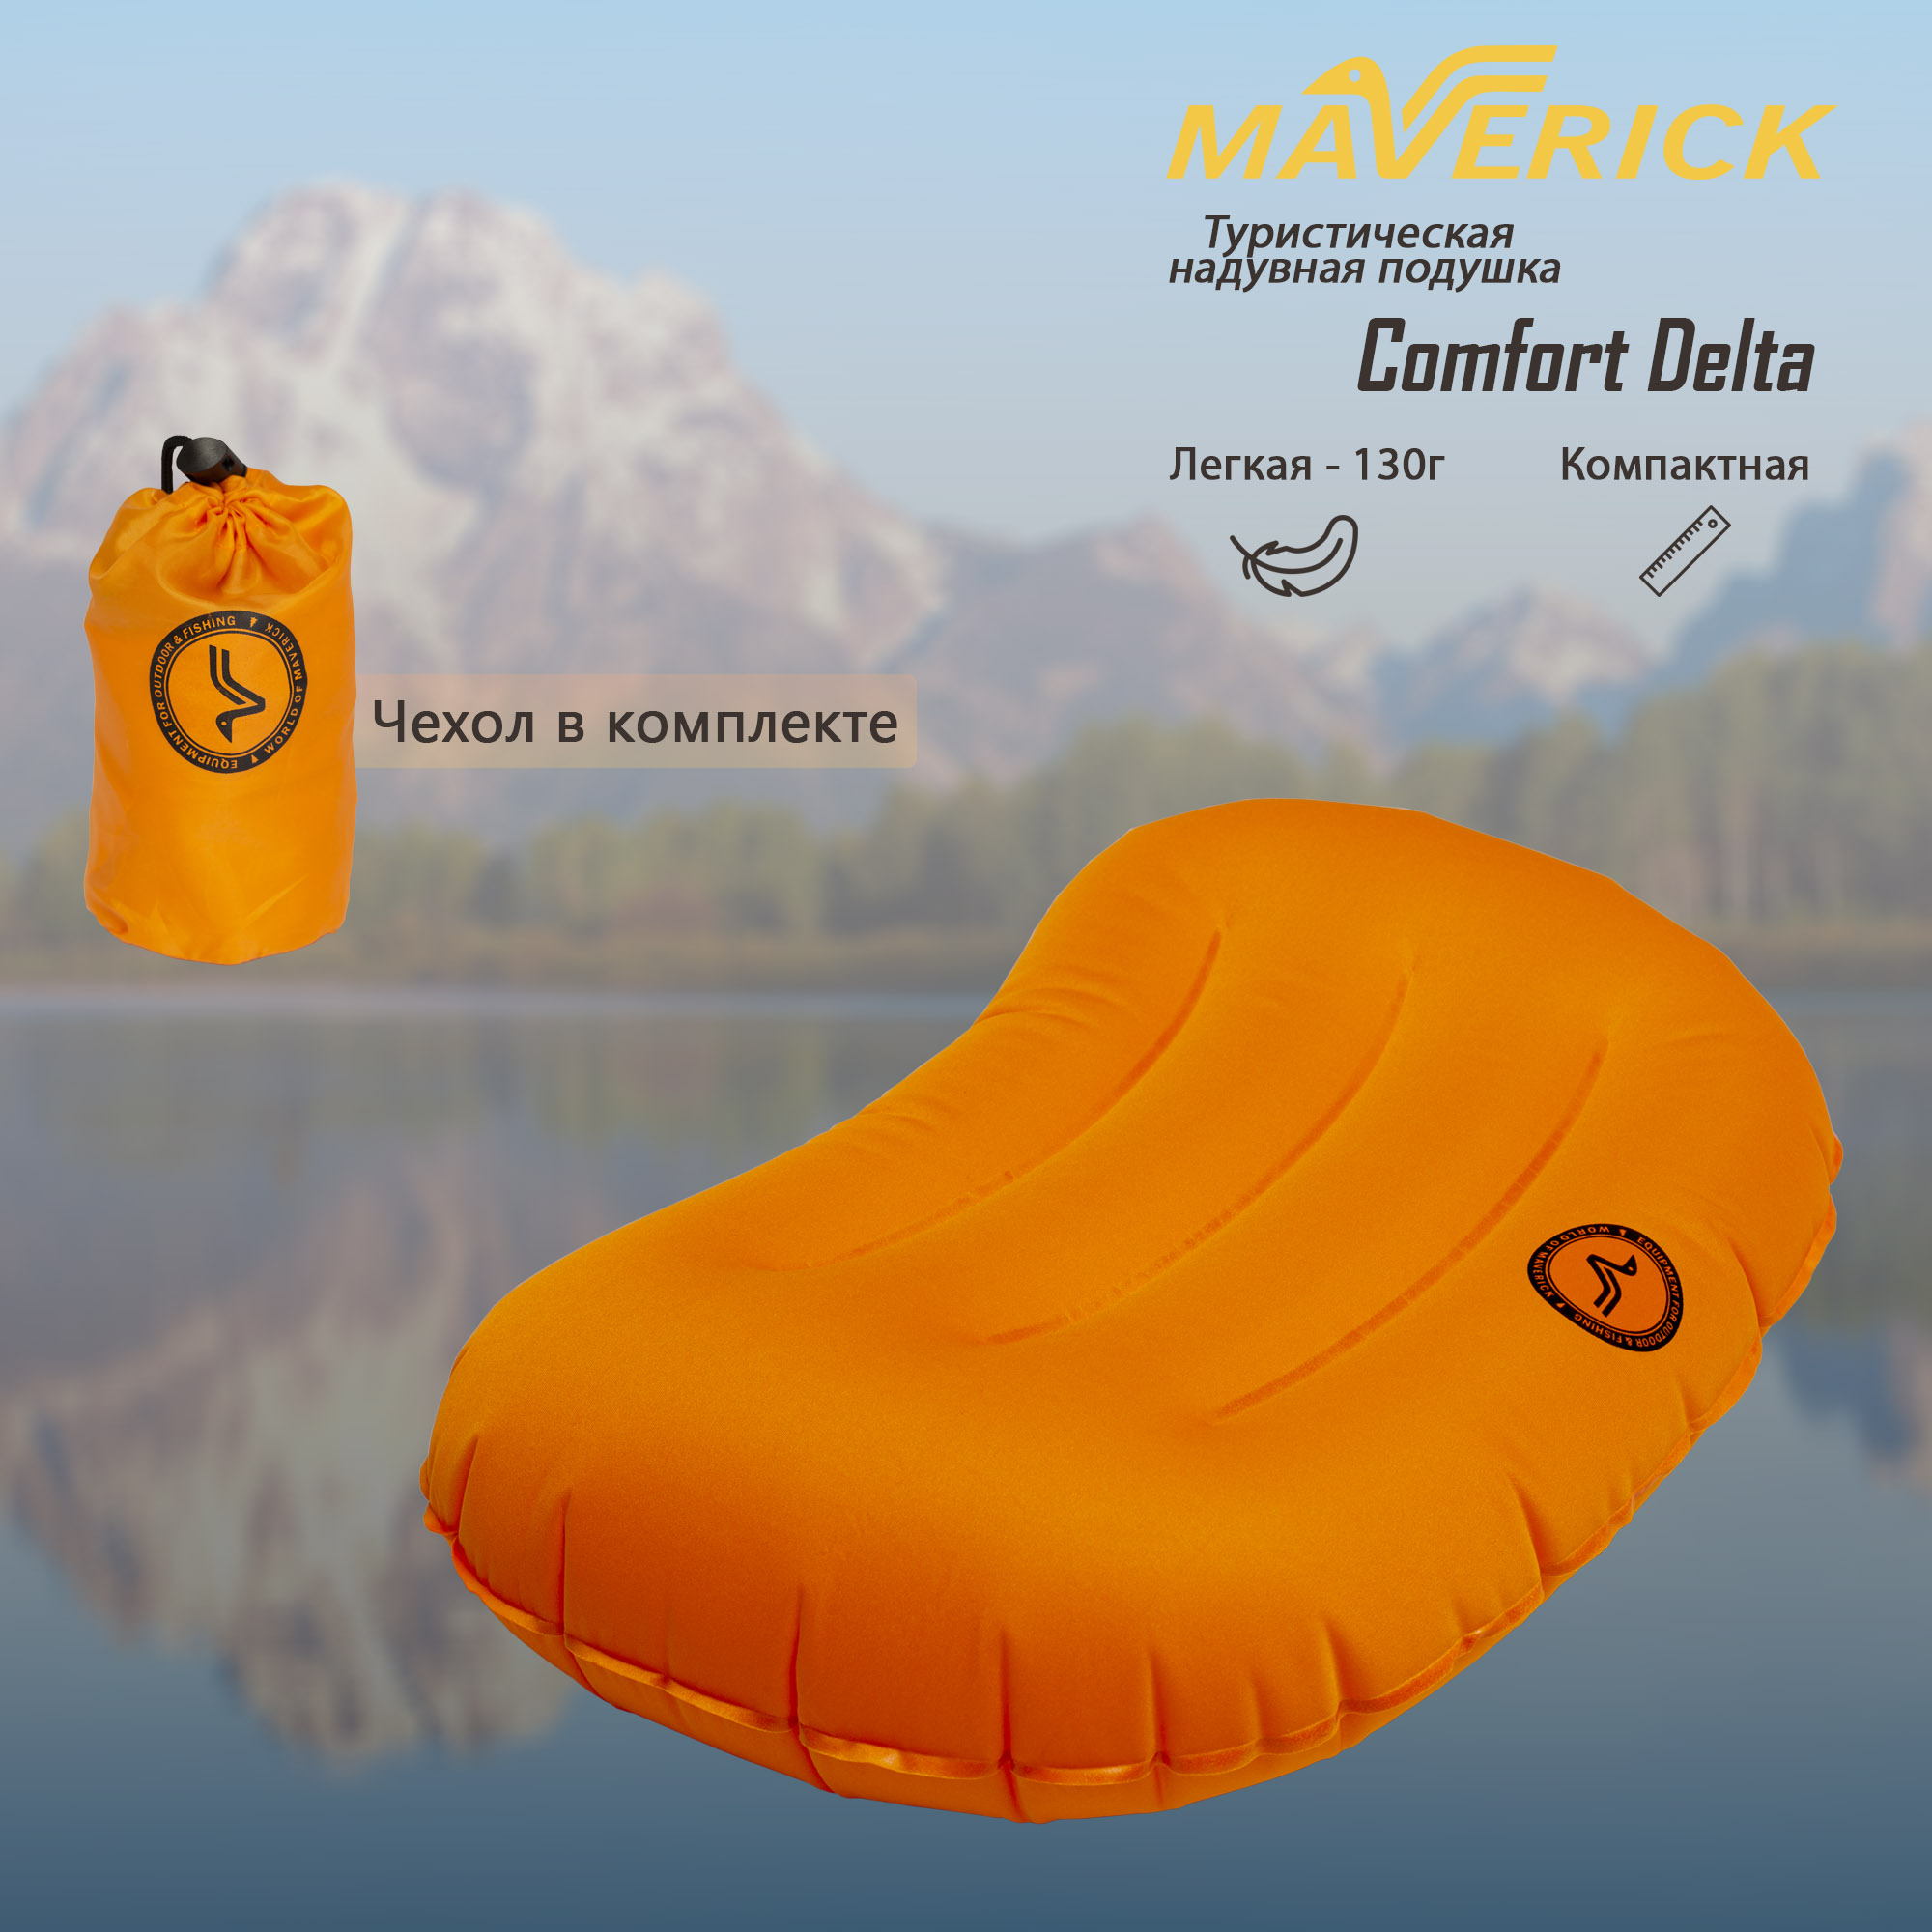 Надувная подушка World of Maverick Comfort Delta 45x30x12.5 cm